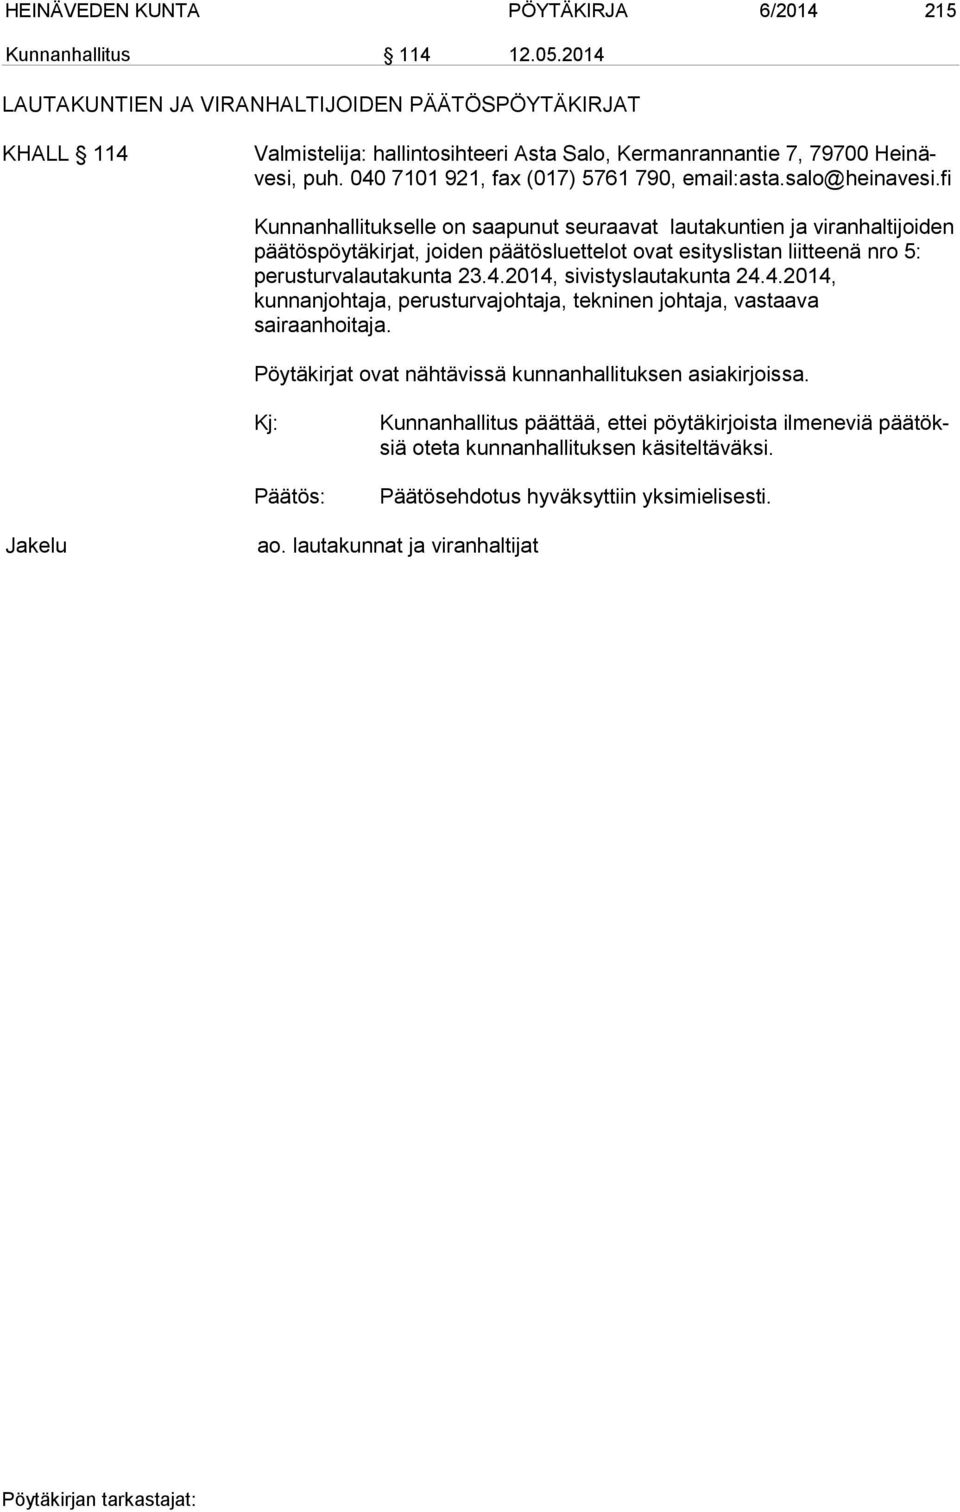 salo@heinavesi.fi Kunnanhallitukselle on saapunut seuraavat lautakuntien ja viranhaltijoiden pää tös pöy tä kirjat, joiden päätösluettelot ovat esityslistan liitteenä nro 5: perusturvalautakunta 23.4.